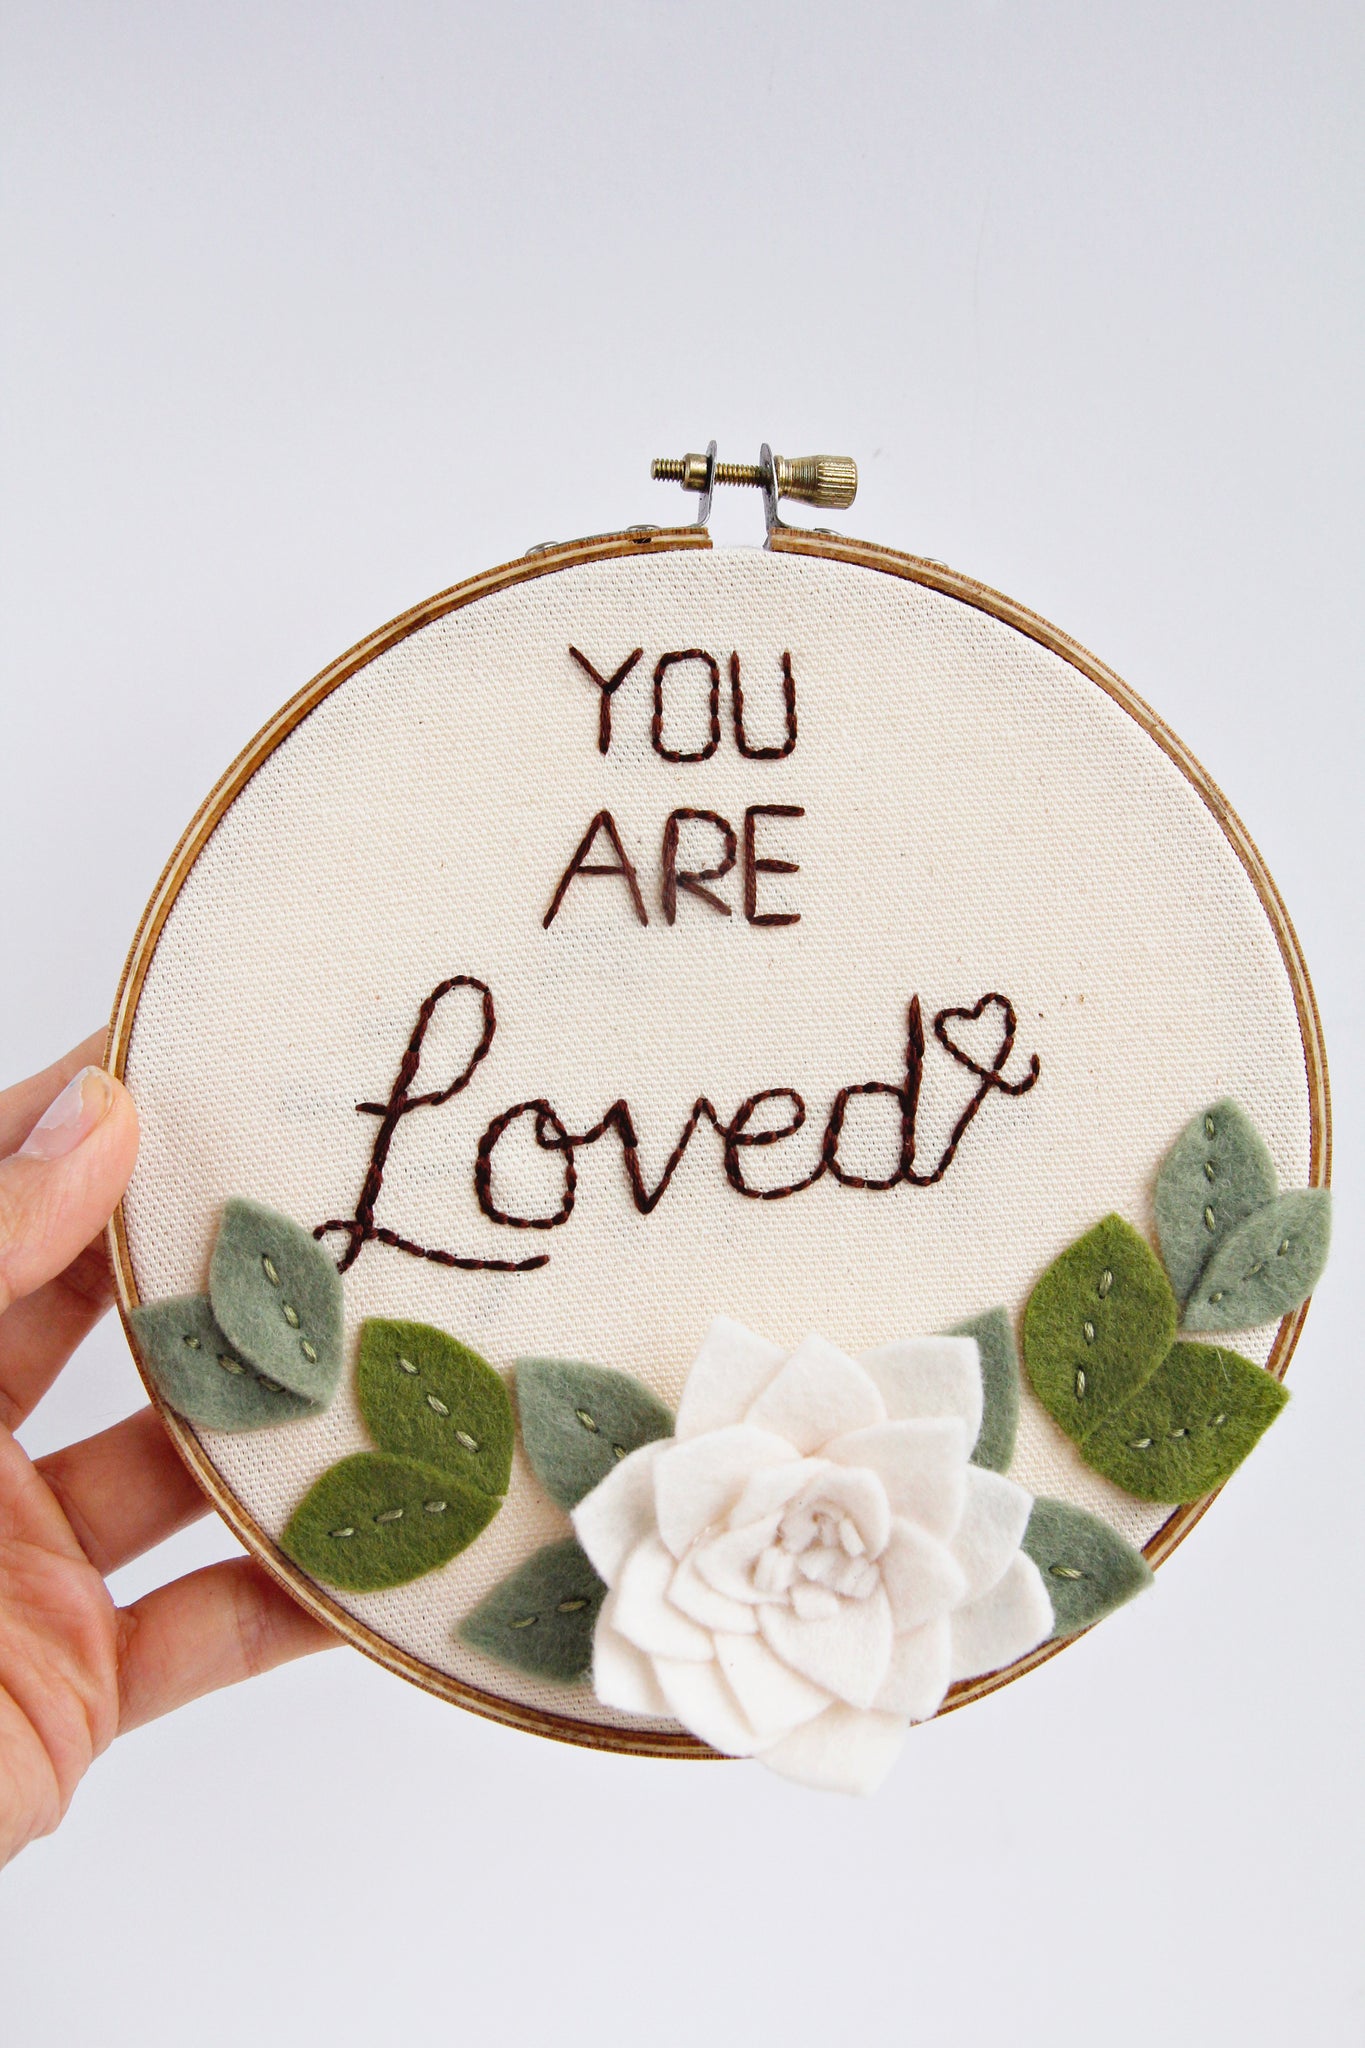 Love Embroidery Hoop